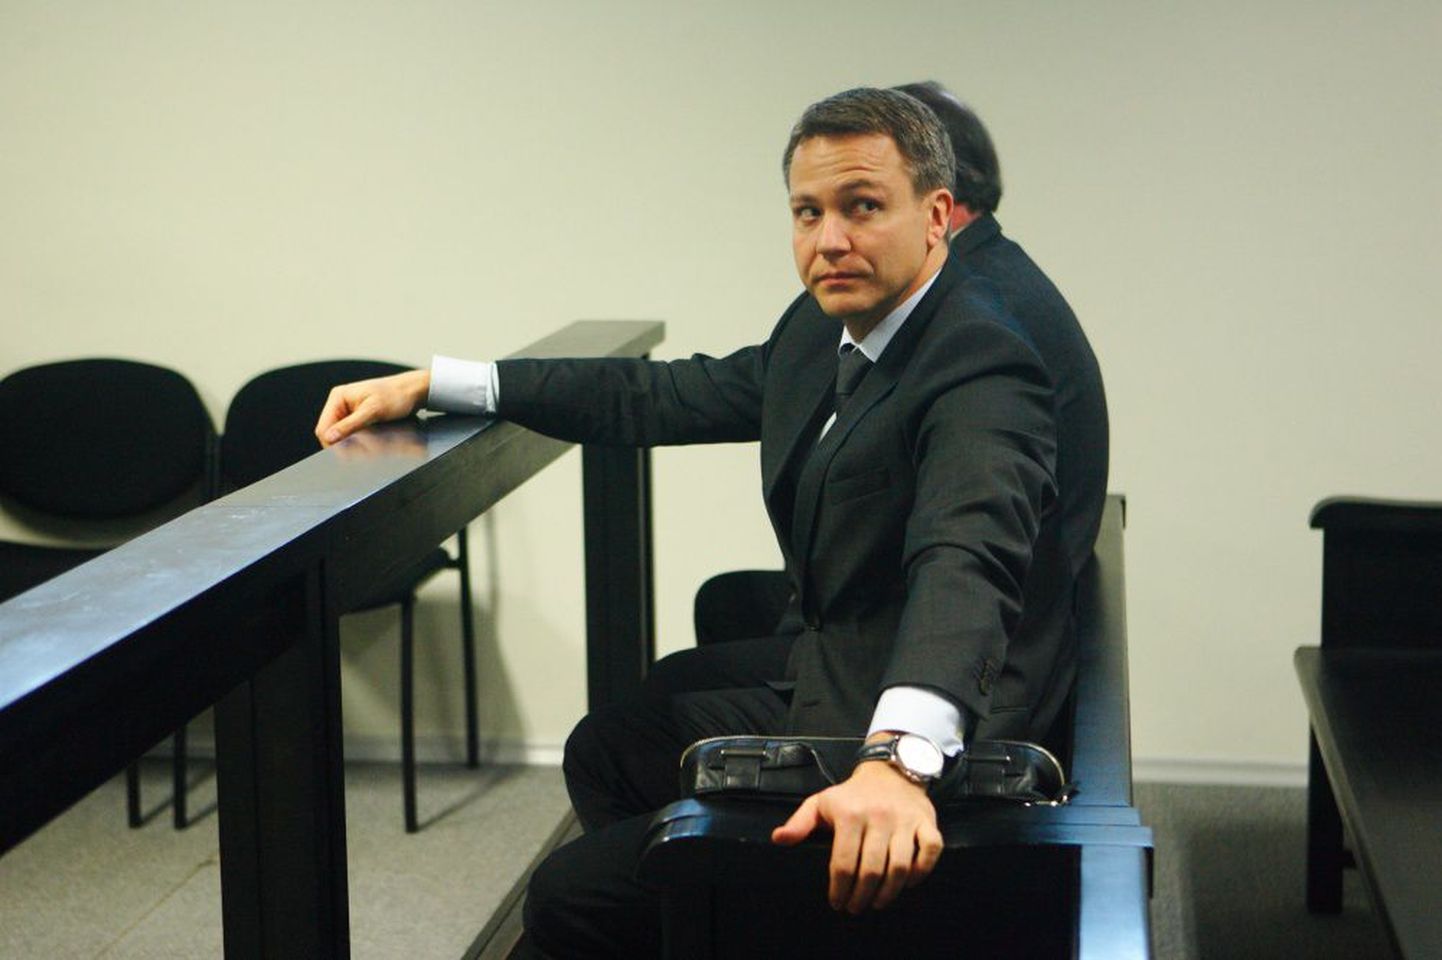 Liviko juht Janek Kalvi kohtusaalis kui alkoholitootjat süüdistati kartellikokkuleppes.